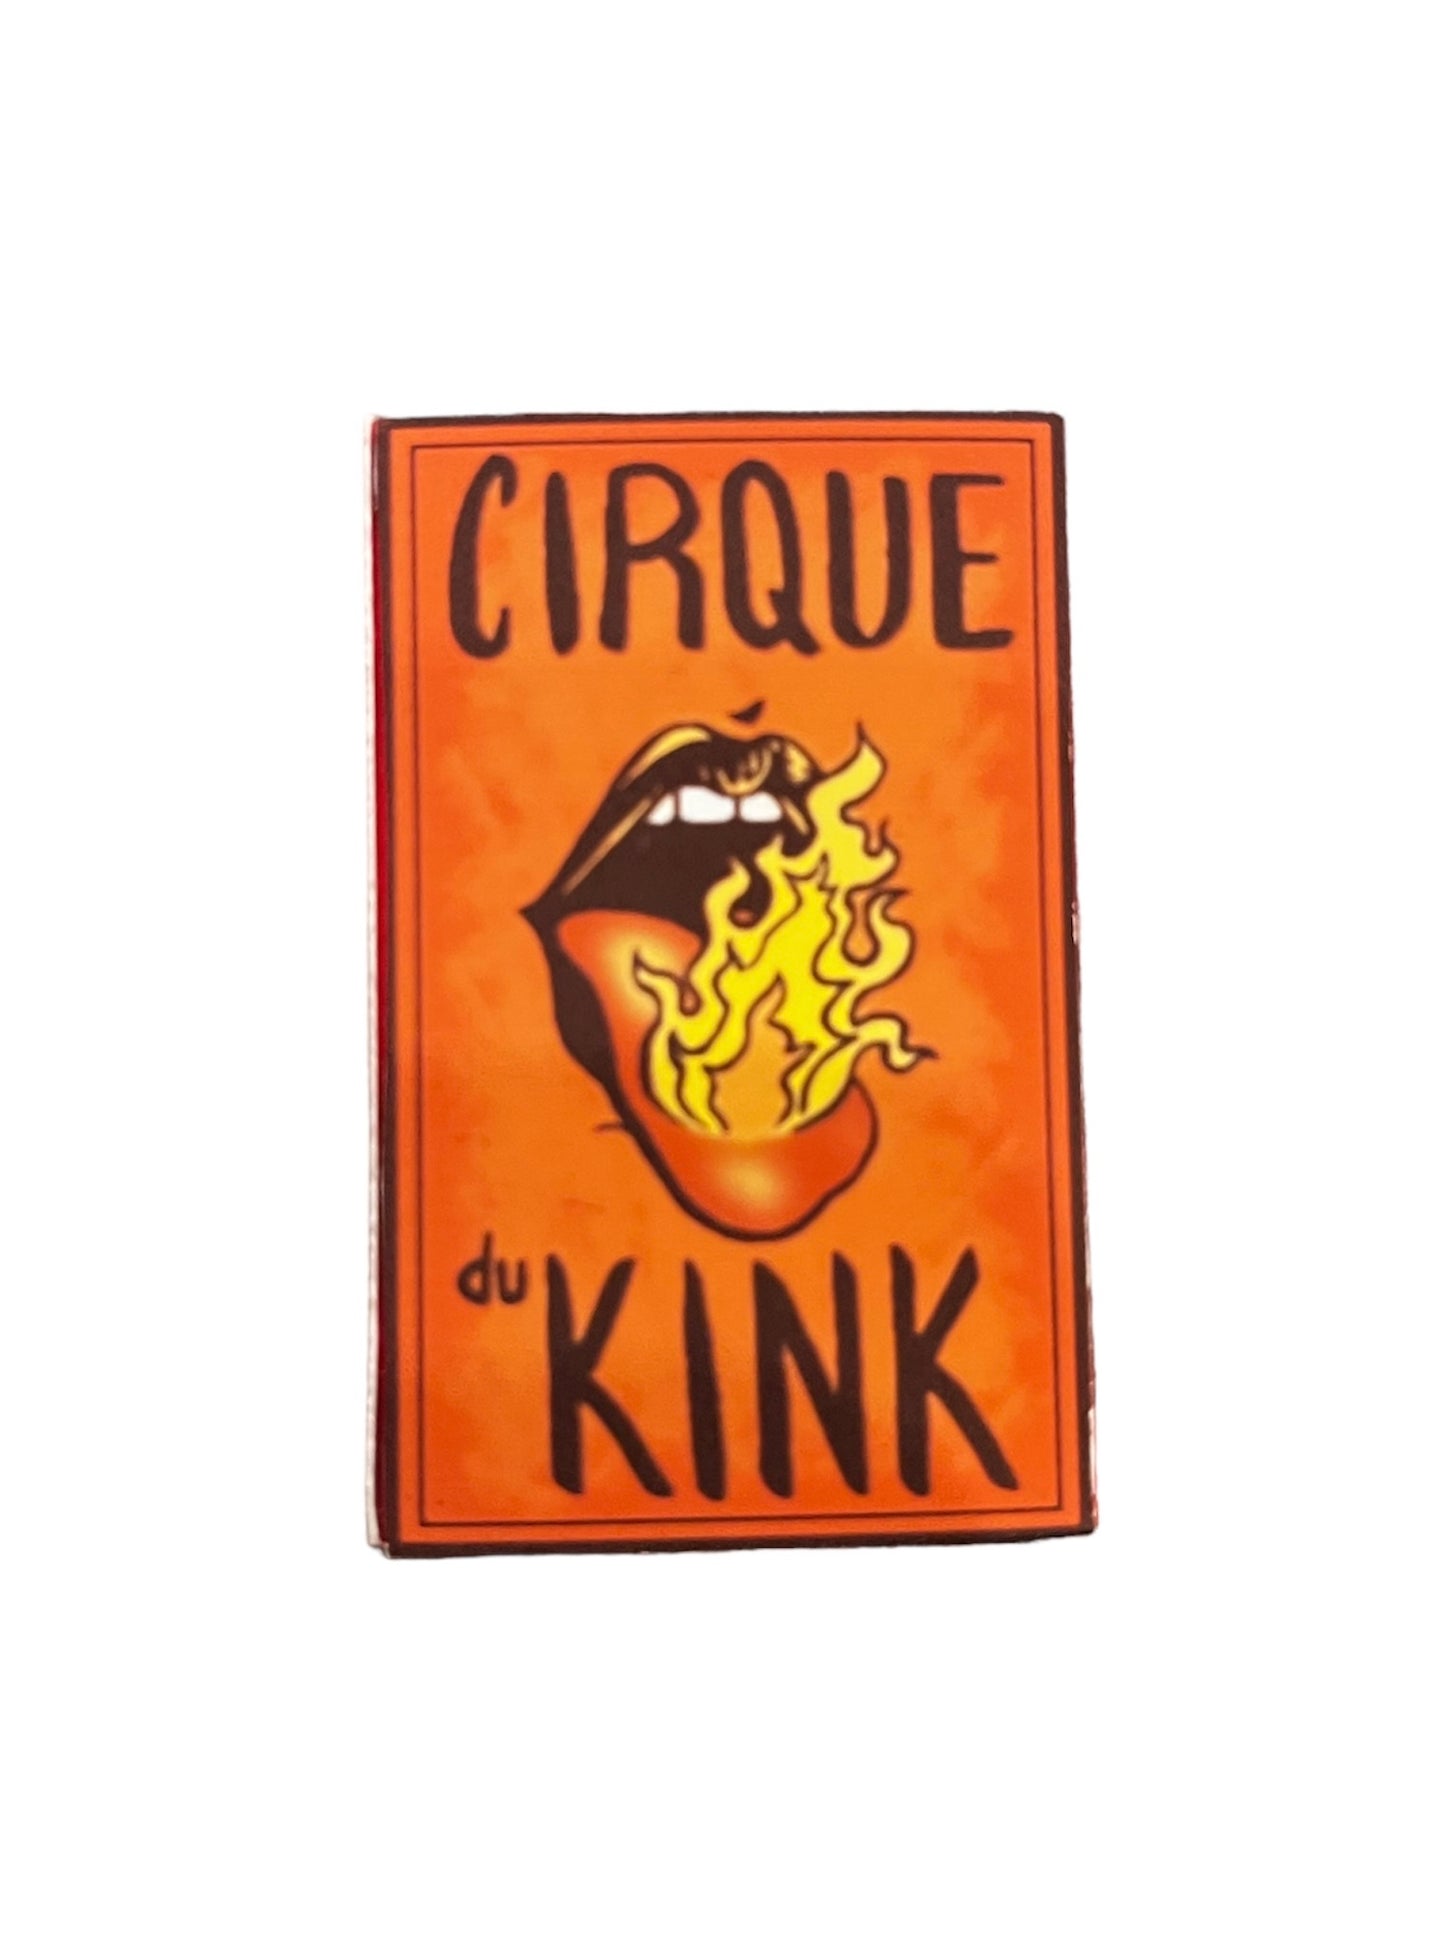 Handmade Matchbooks by Cirque Du Kink